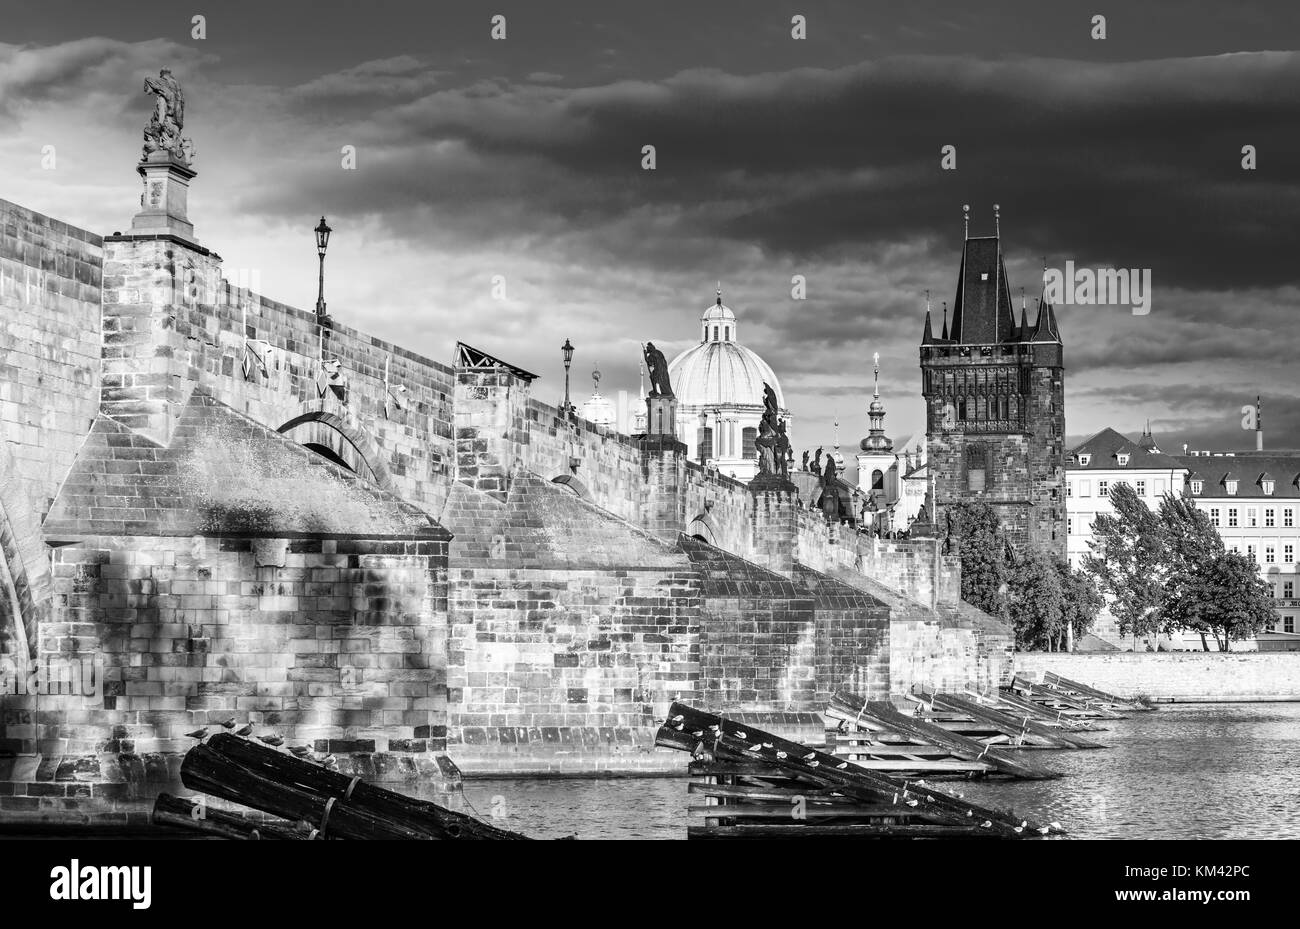 El centro histórico de Praga, con el castillo de Hradcany, el puente de Carlos y el río Vltava, Praga, República Checa Foto de stock